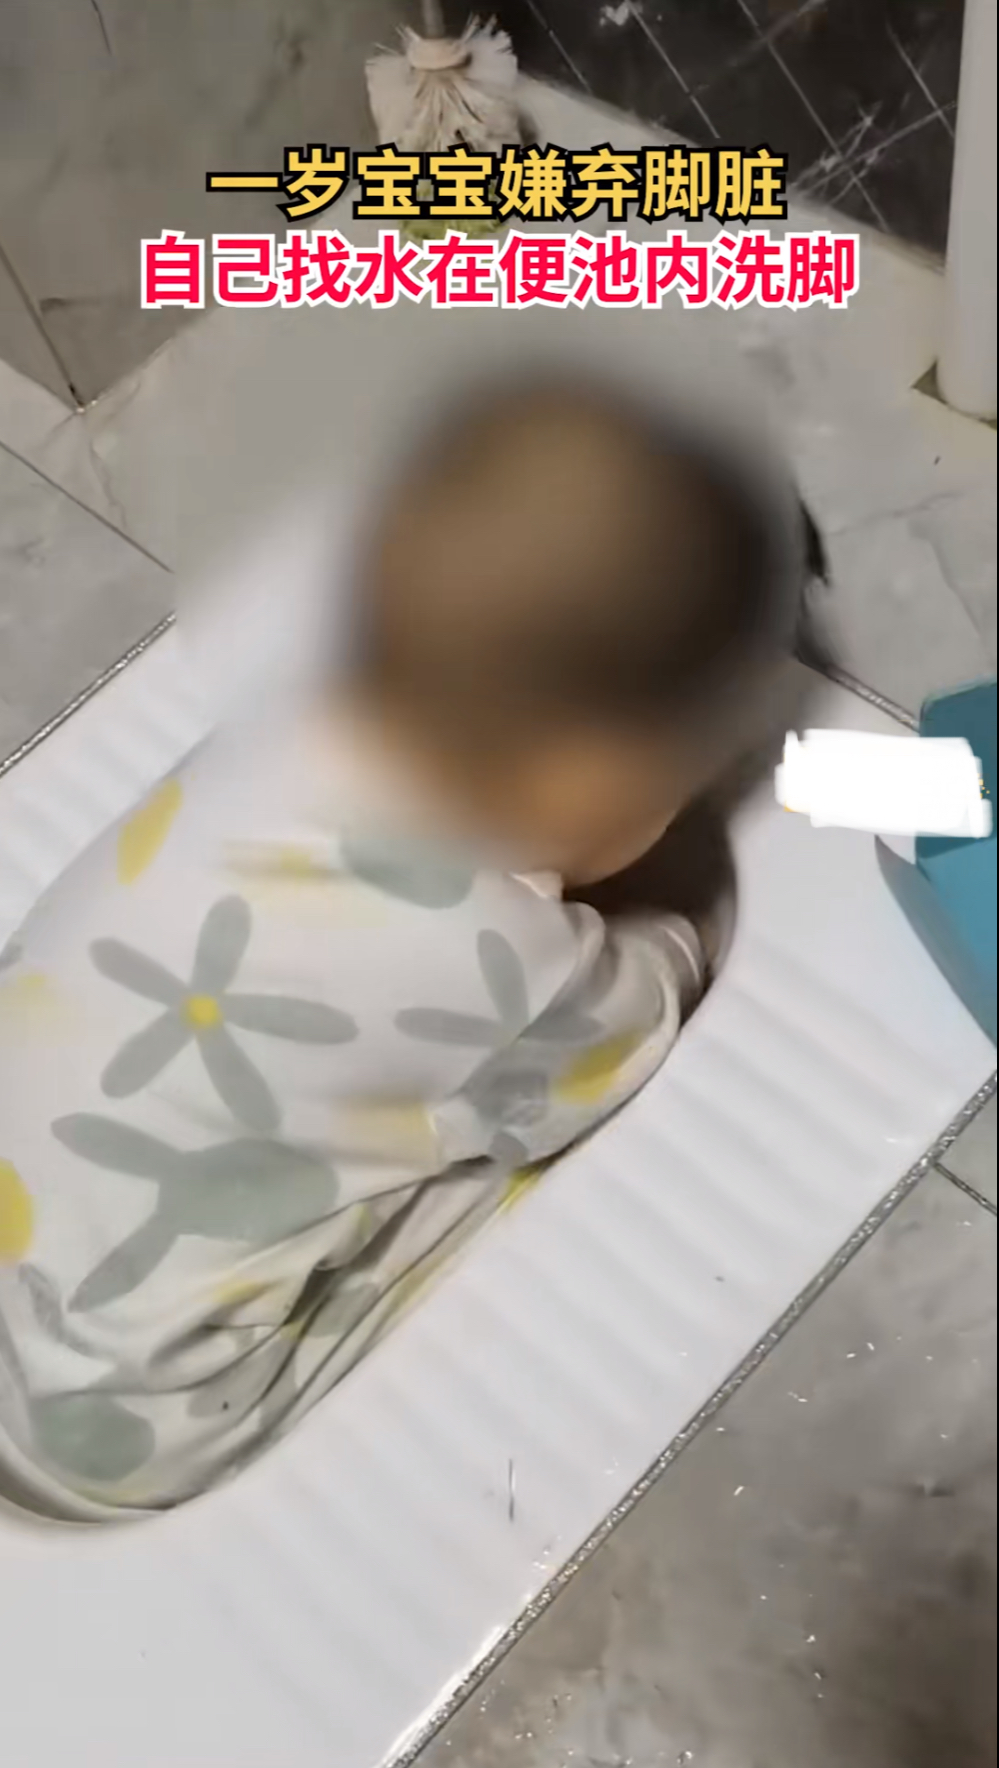 1岁宝宝嫌脚脏在便池内清洗！孩子的父母看到后是什么反应？